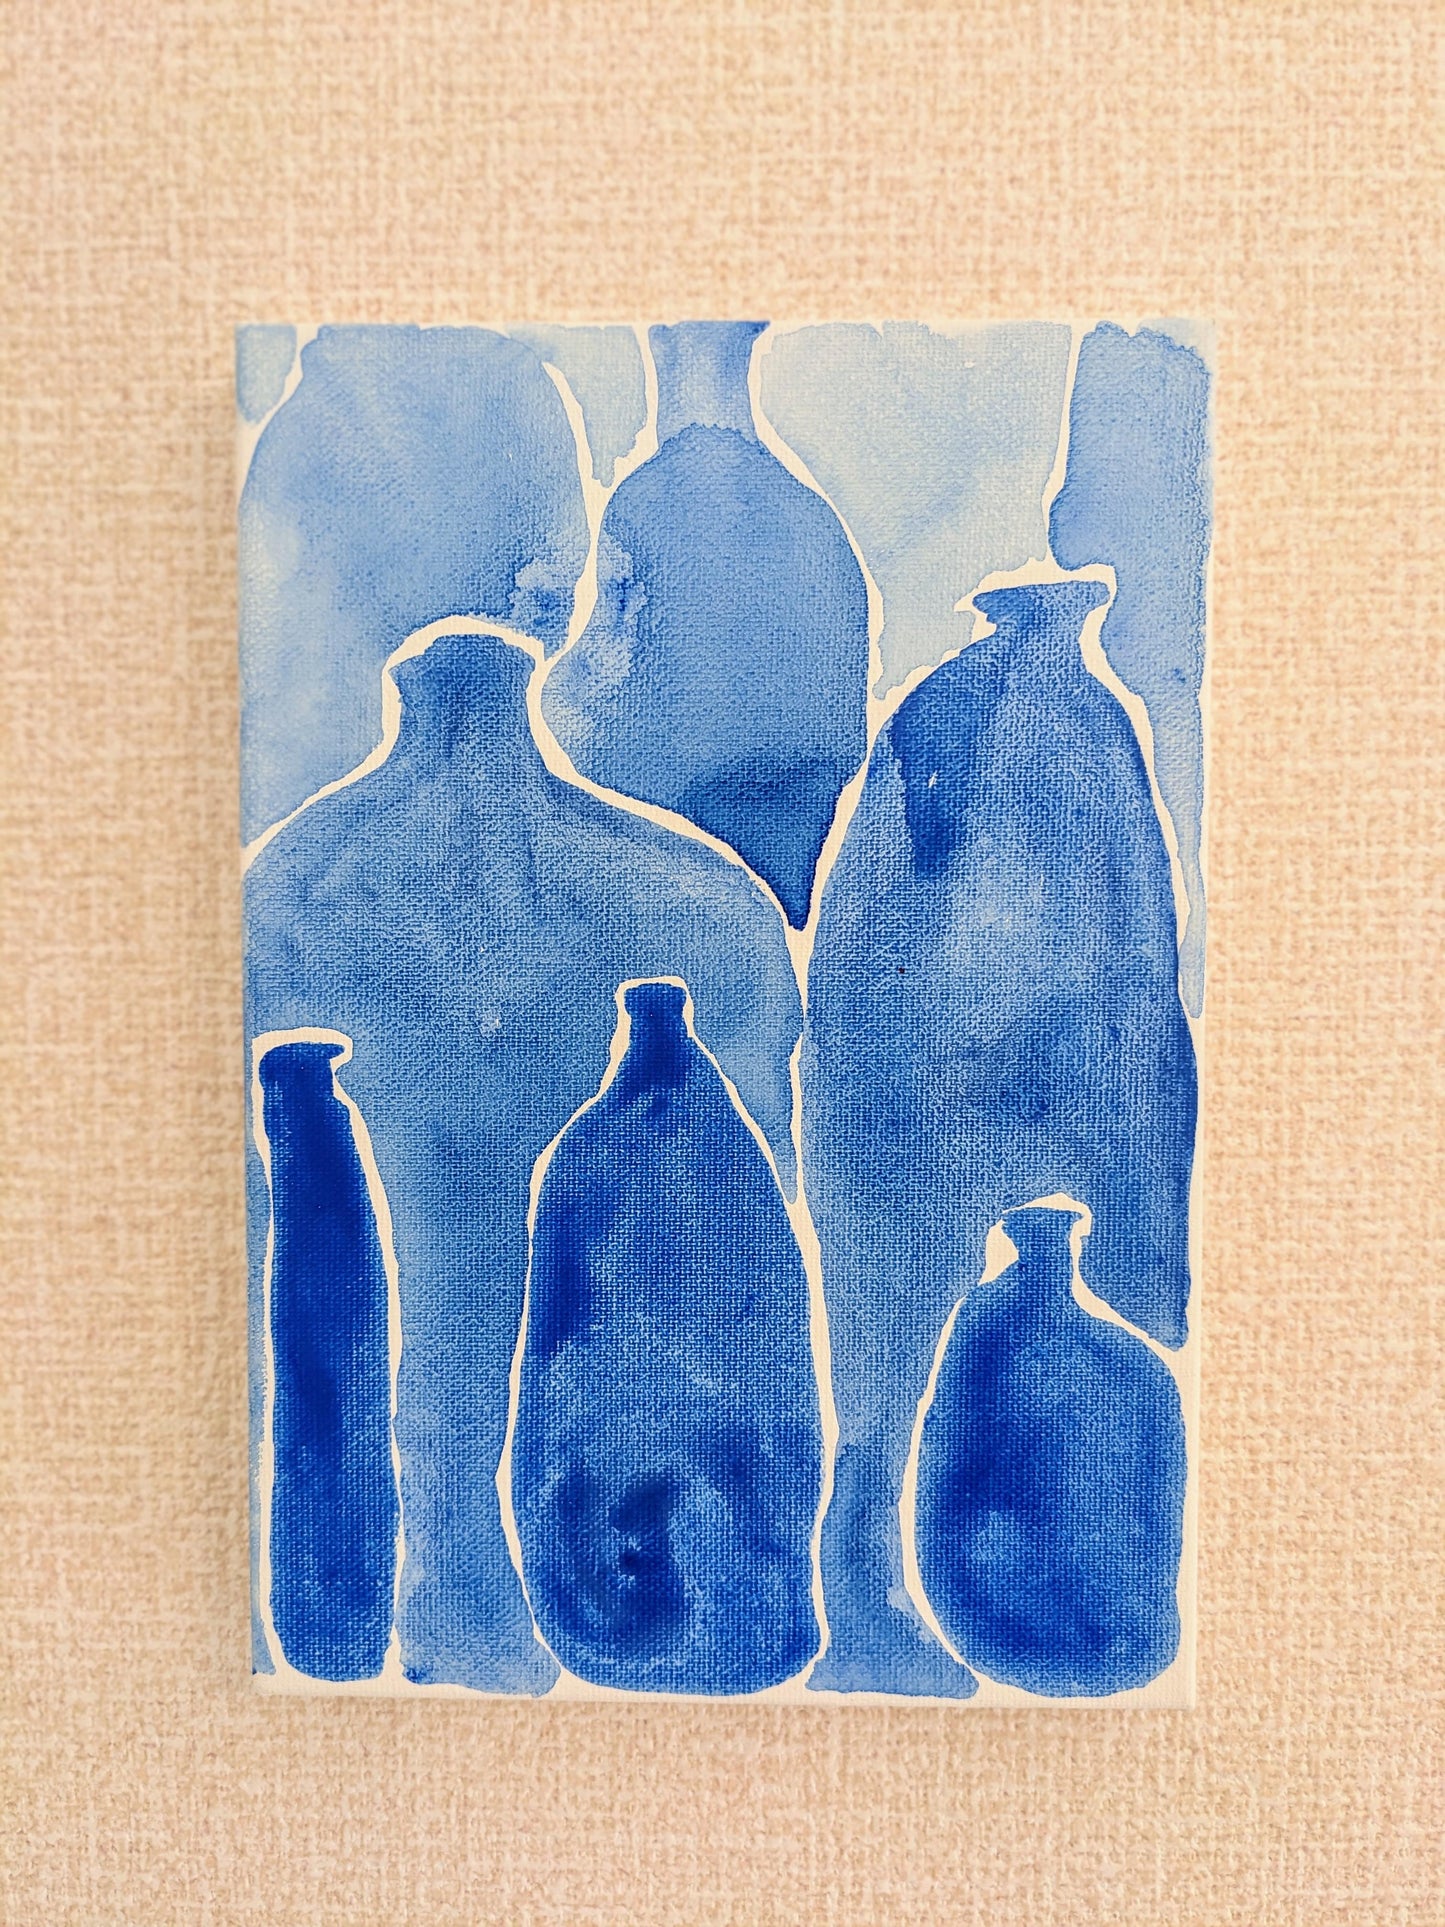 『ブルー・ボトル(Blue bottles)』 - FROM ARTIST